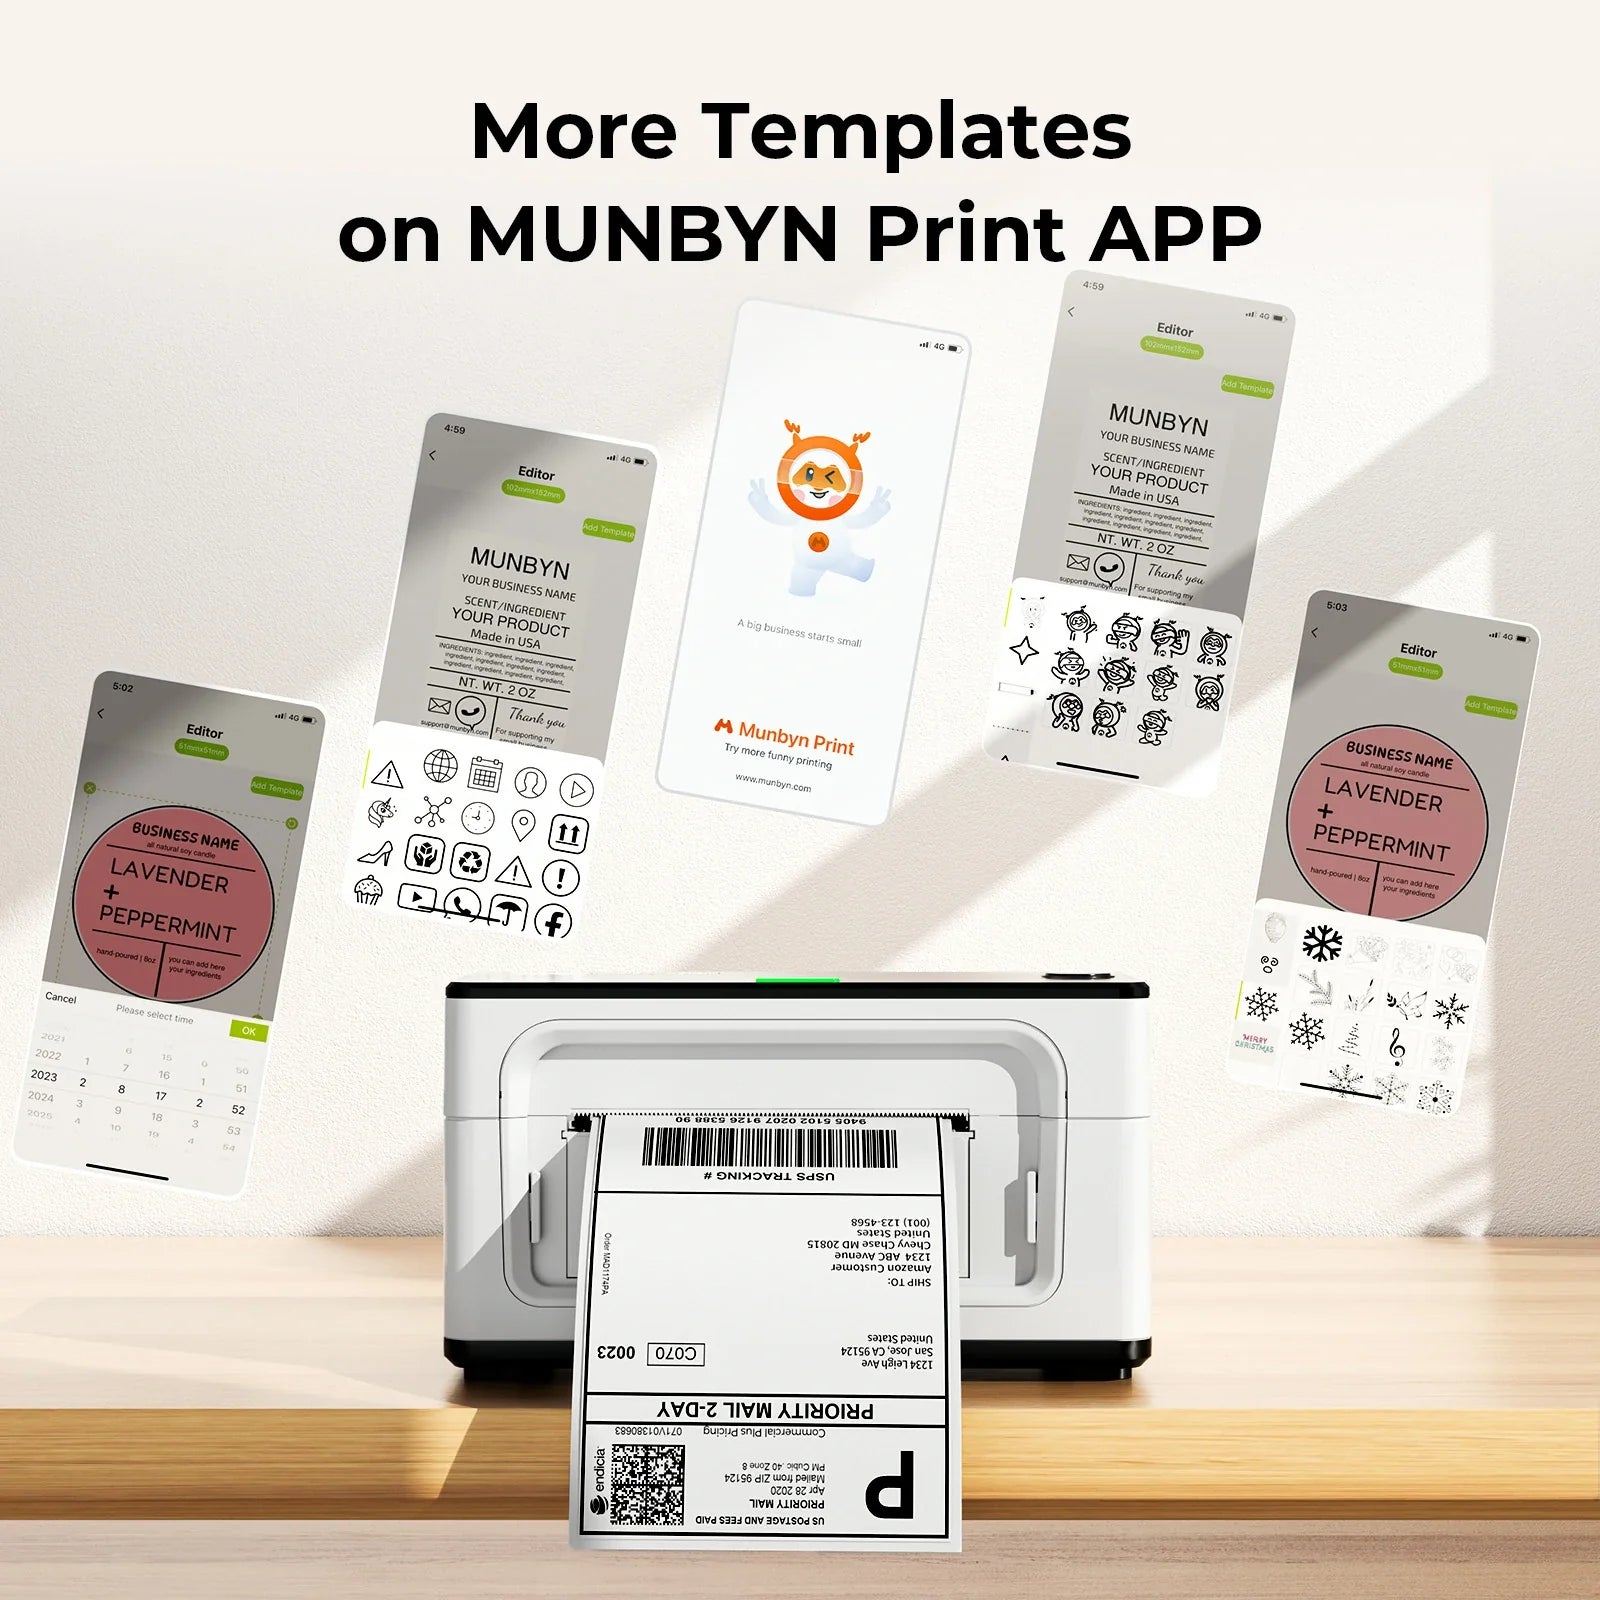 Die MUNBYN Print-App bietet eine Vielzahl von Etikettenvorlagen